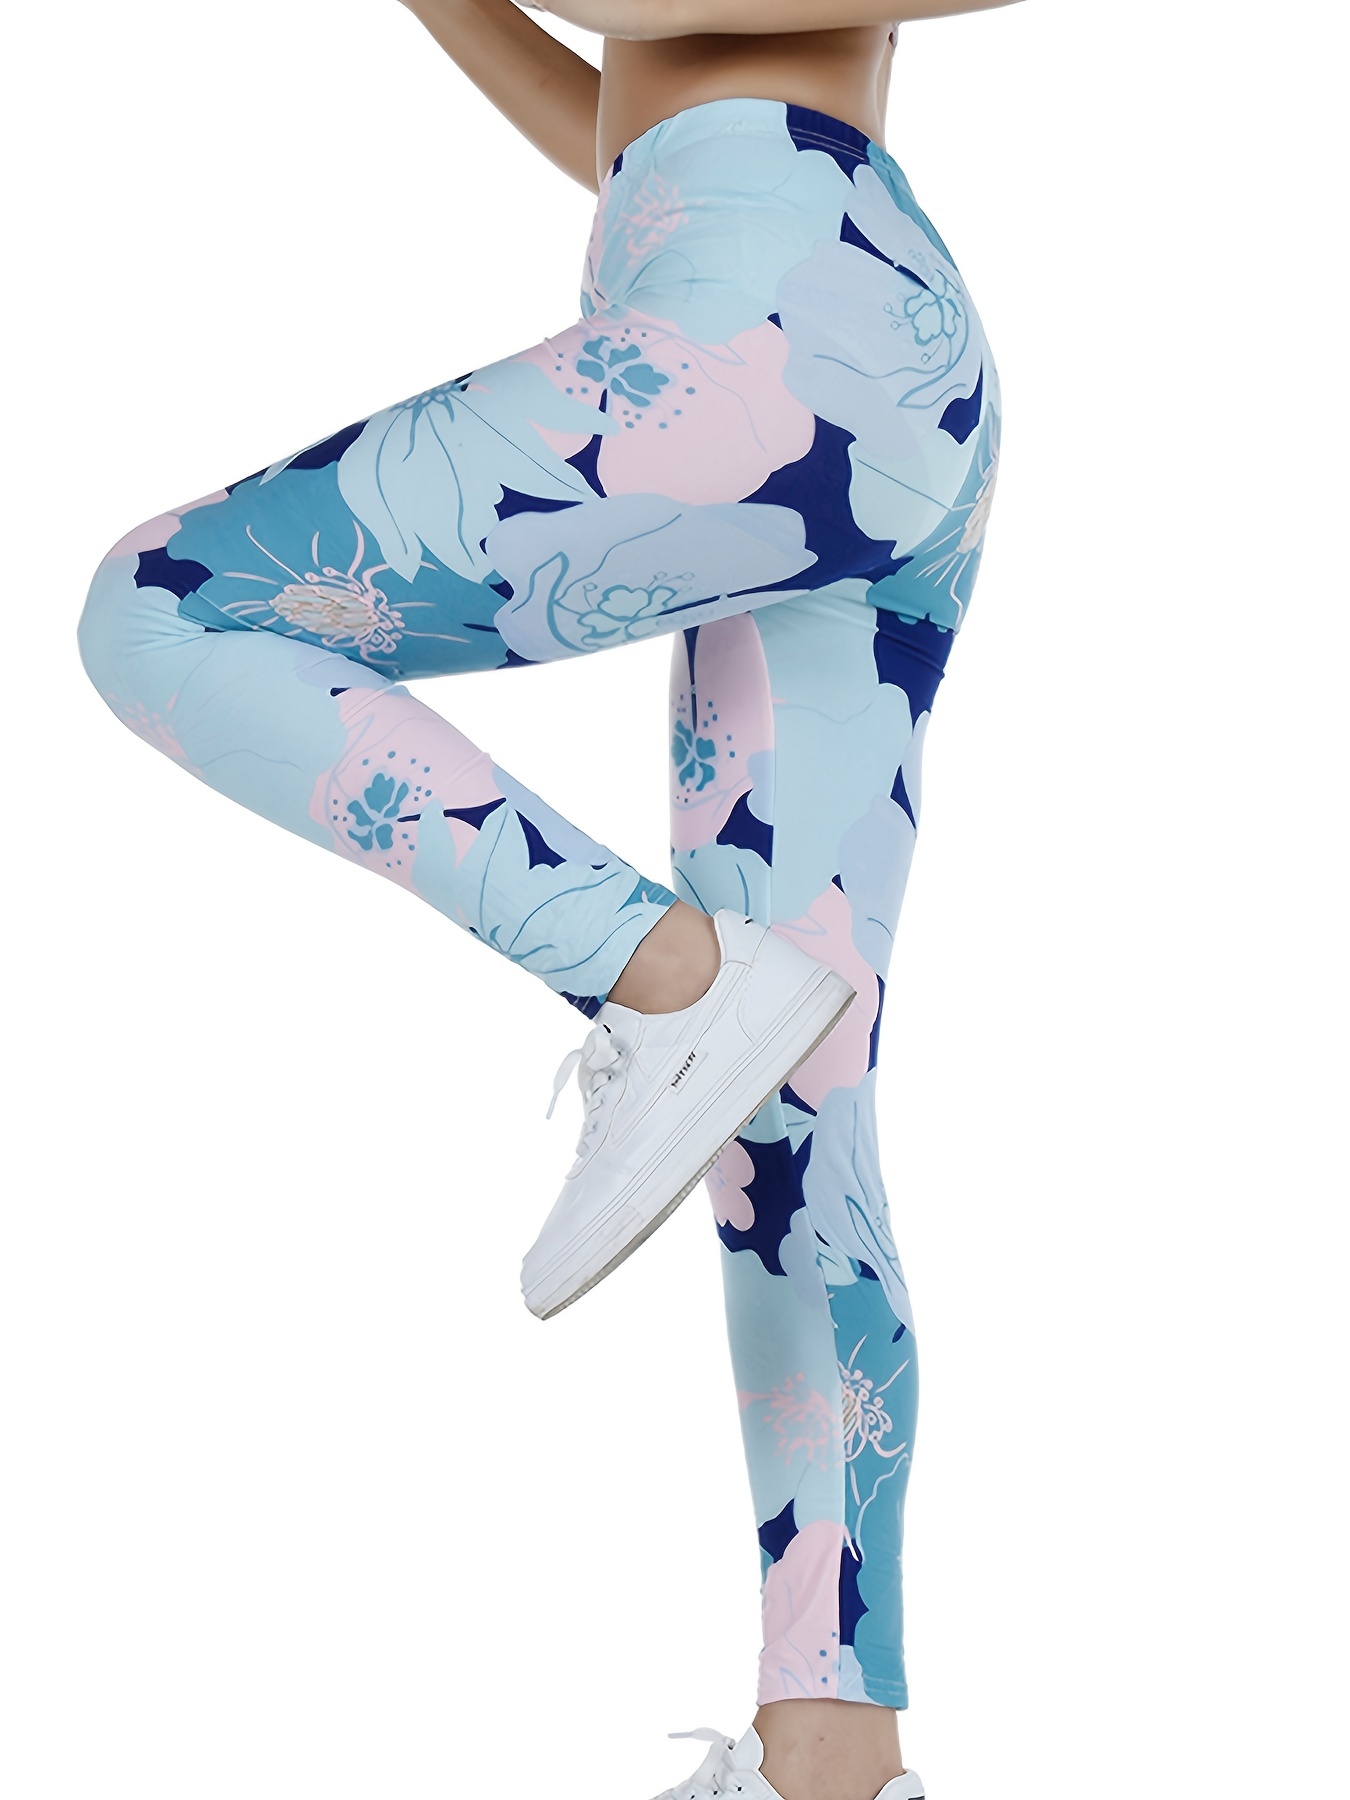 Colourful Target Leggings Women's Print Fitness Stretch *Leggings